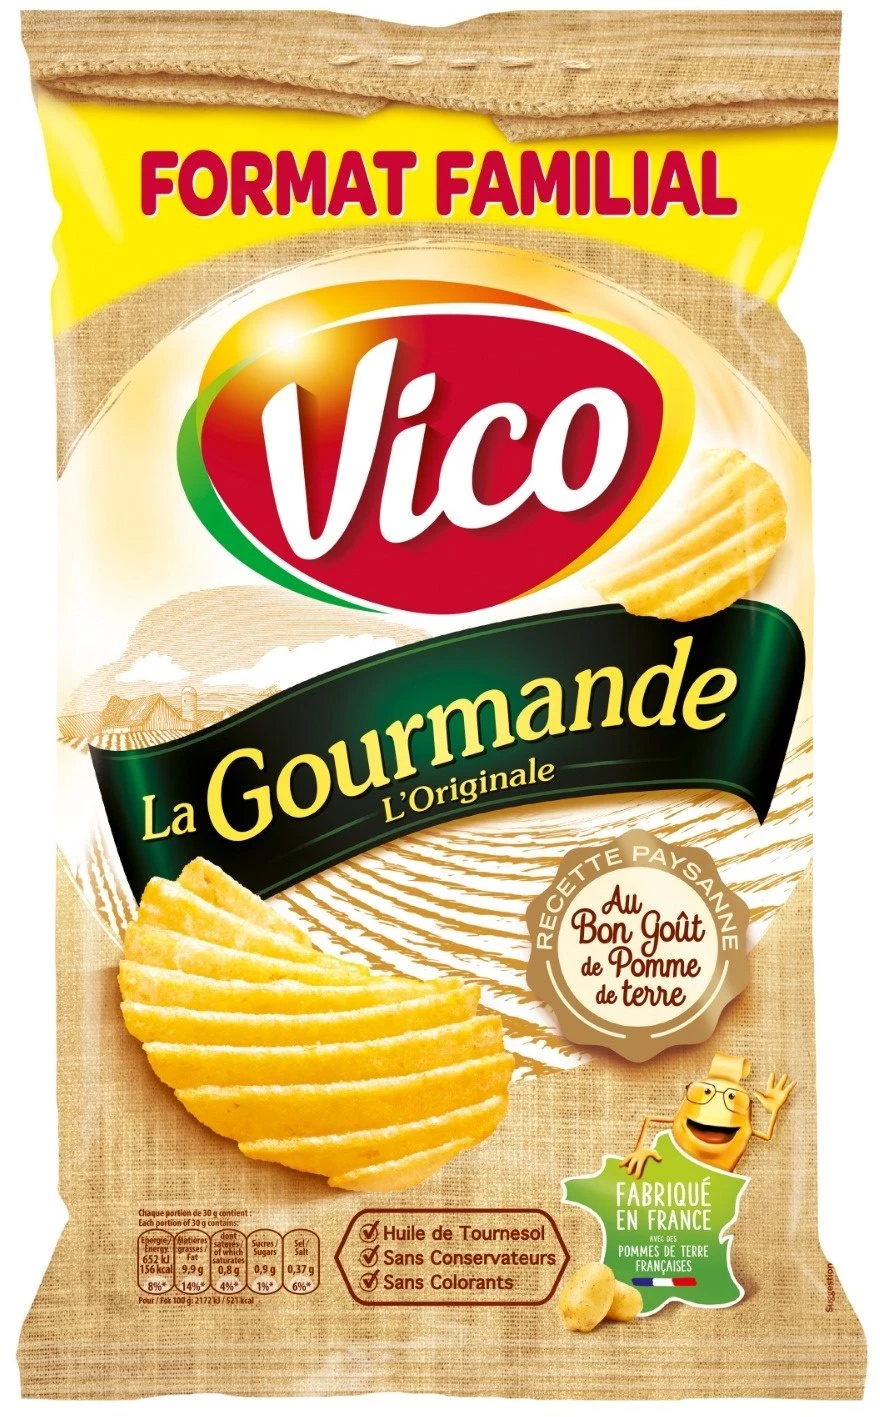 La Gourmande L'Origina Crisps, 200g - VICO